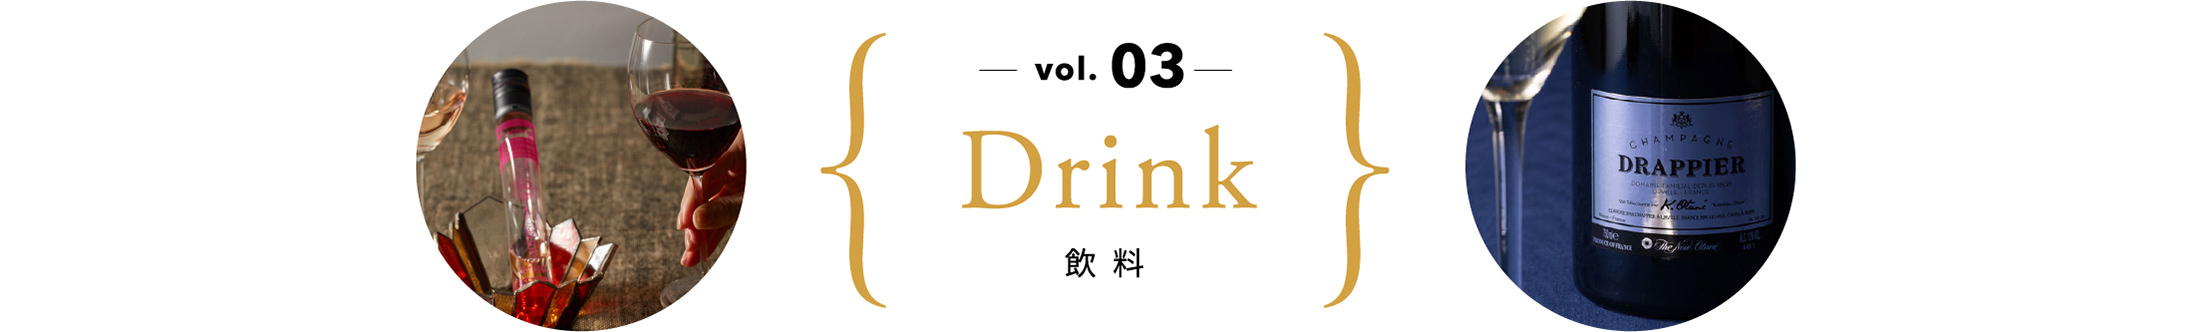 vol.03 飲料